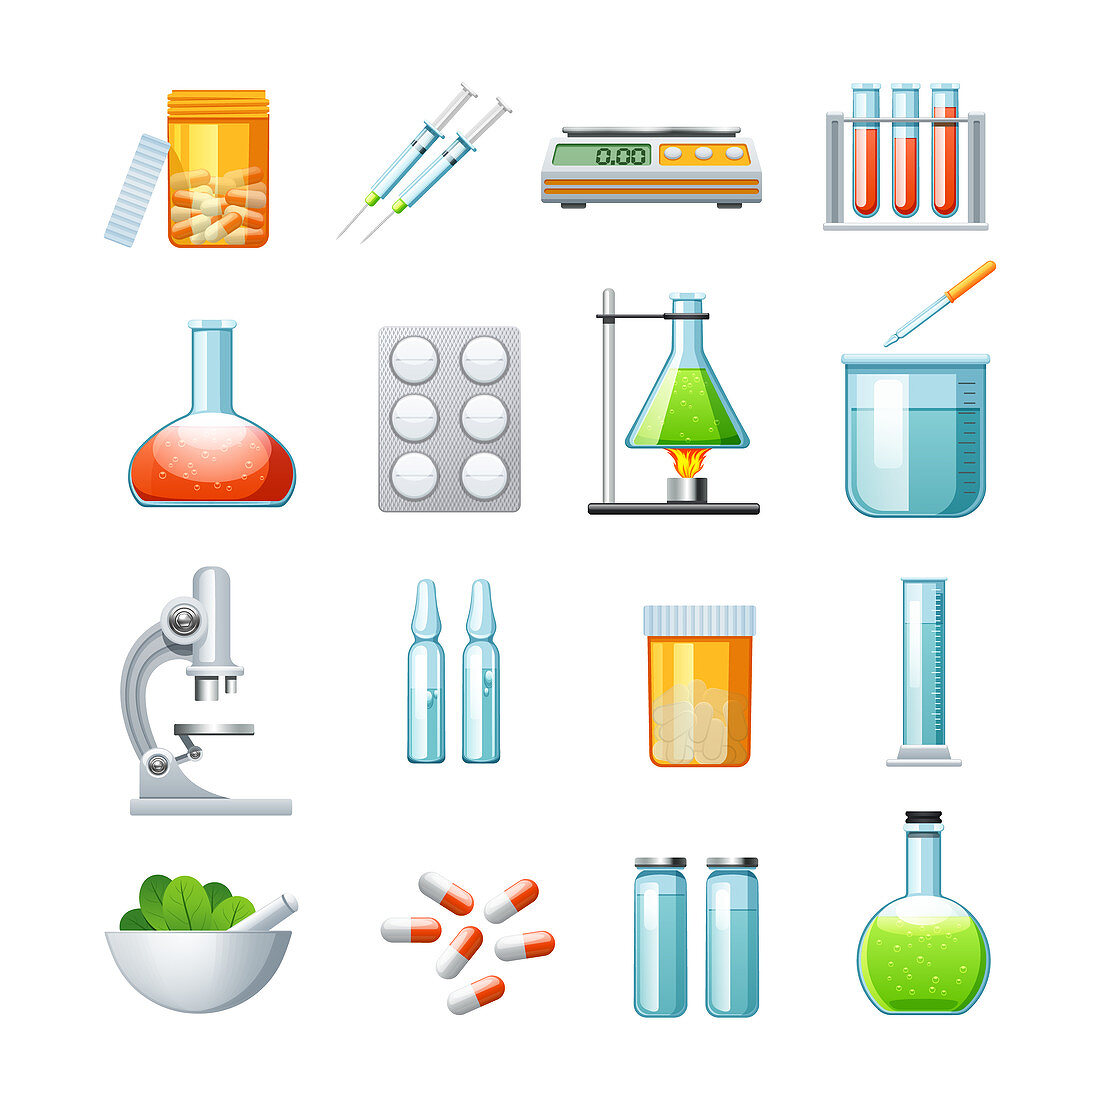 Pharmacology icons, illustration